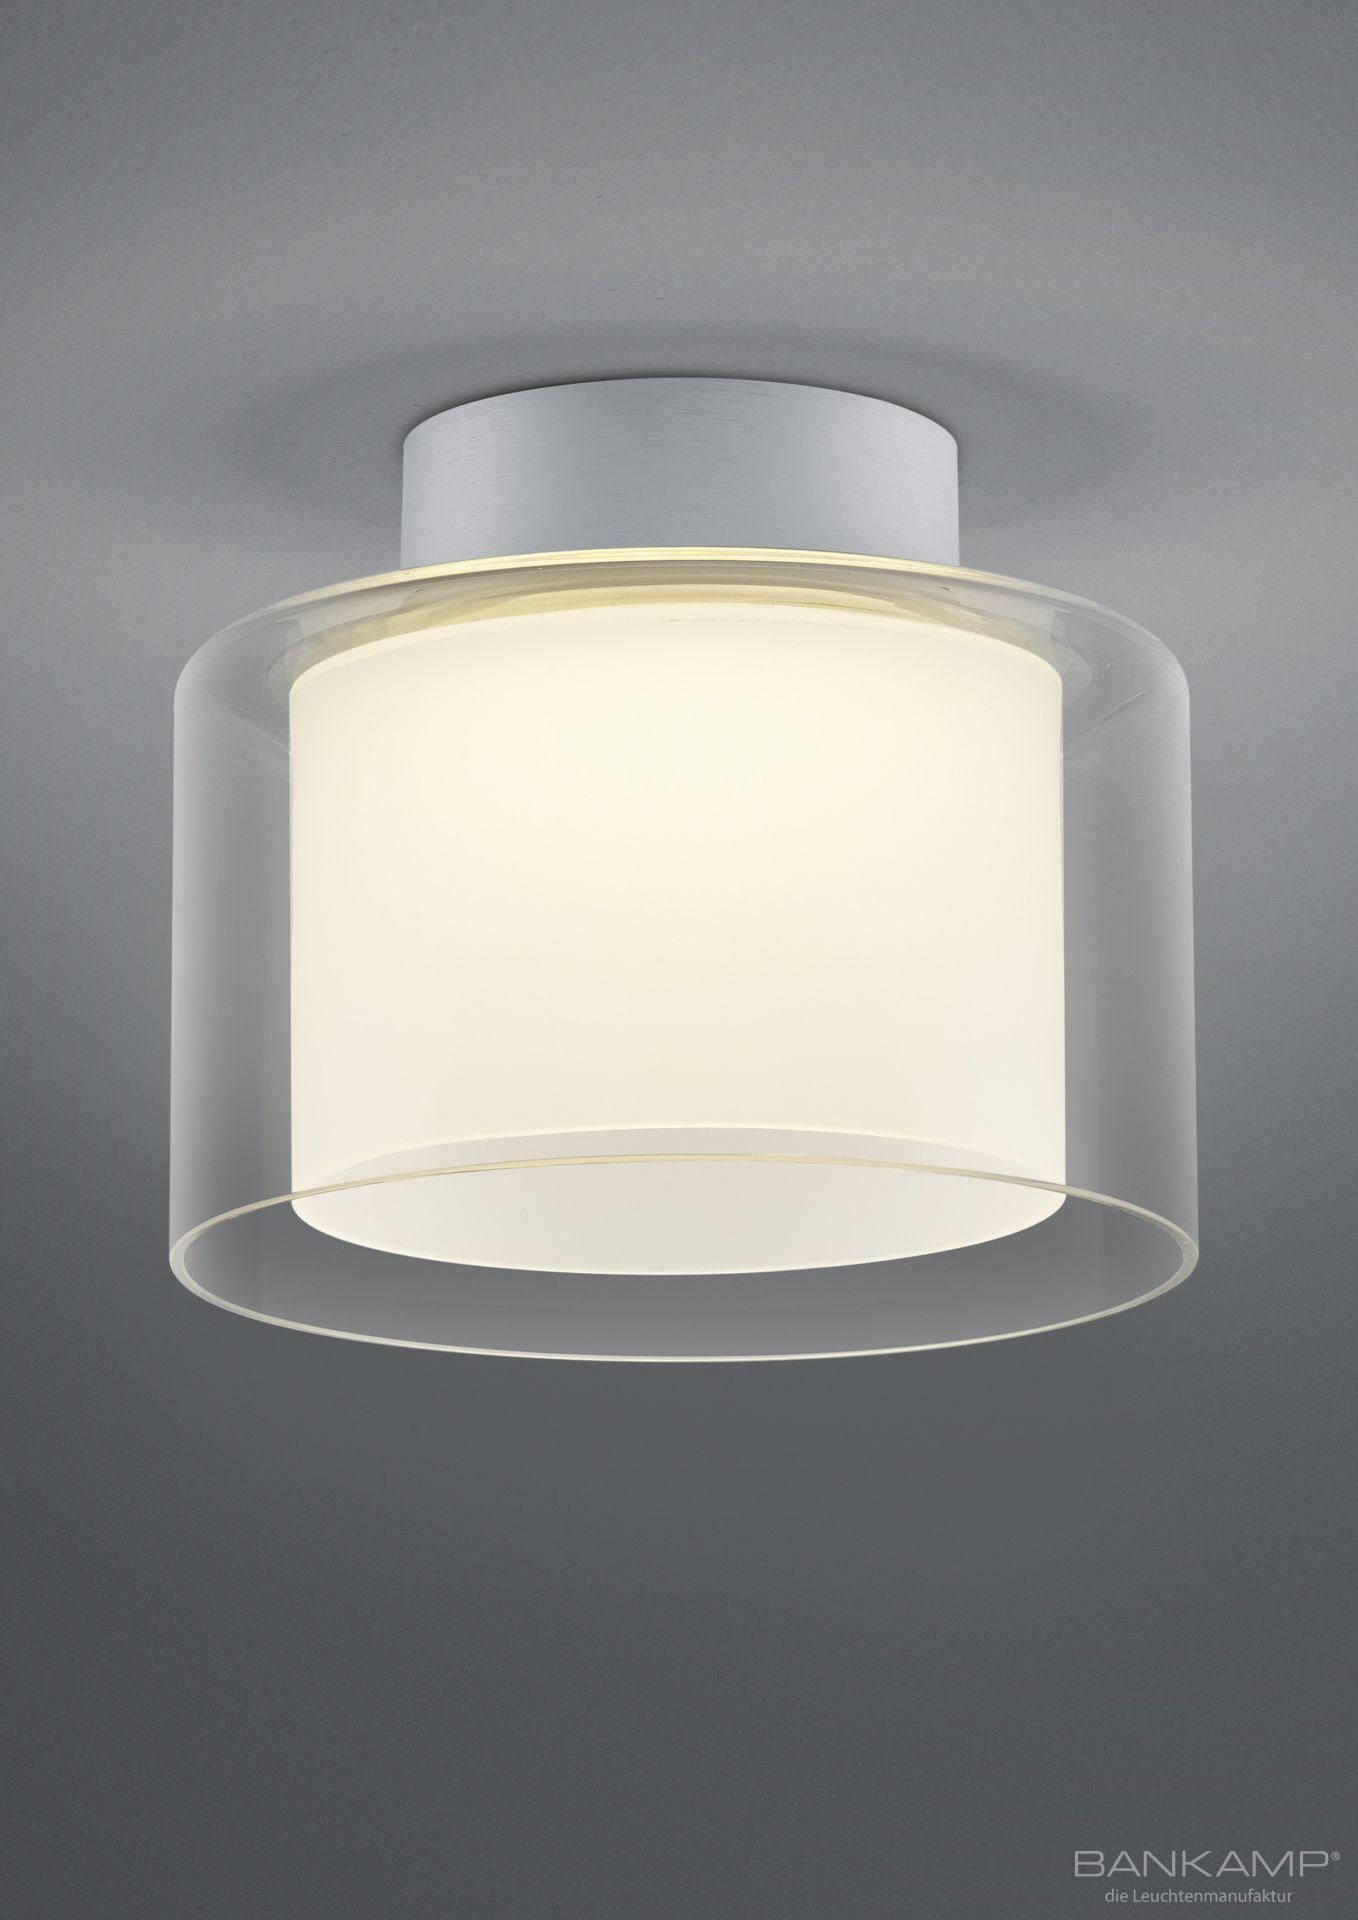 BANKAMP Leuchtenmanufaktur Moderne Deckenleuchten & Deckenlampen fürs Esszimmer von BANKAMP Leuchtenmanufaktur LED-Deckenleuchte Grand Clear 7770/1-36